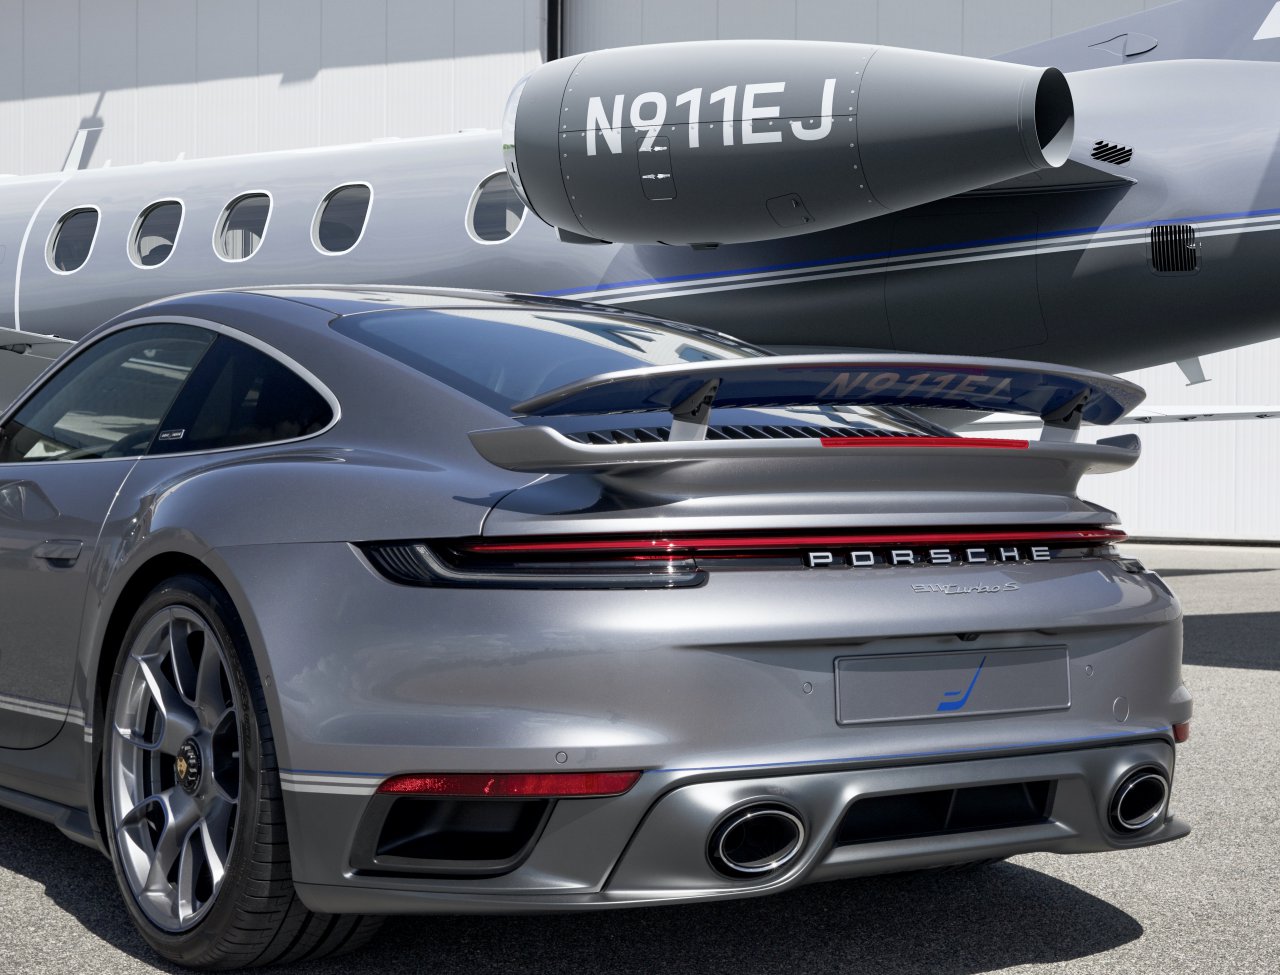 Porsche, Porsche, aircraft maker offer ‘Duet’ package, ClassicCars.com Journal